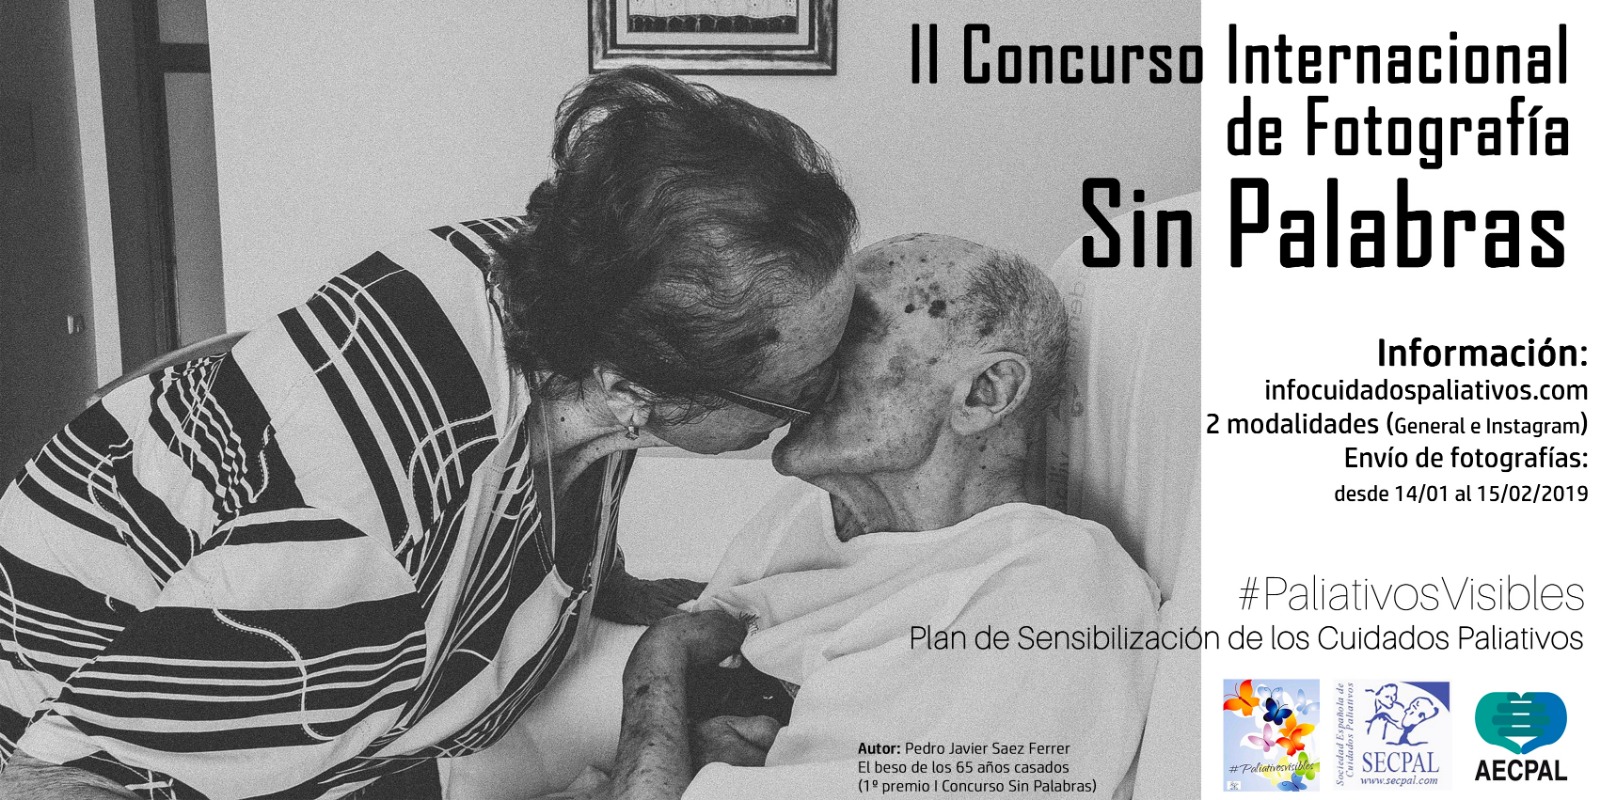 II Curso Internacional de Fotografía #SinPalabras #paliativosvisibles